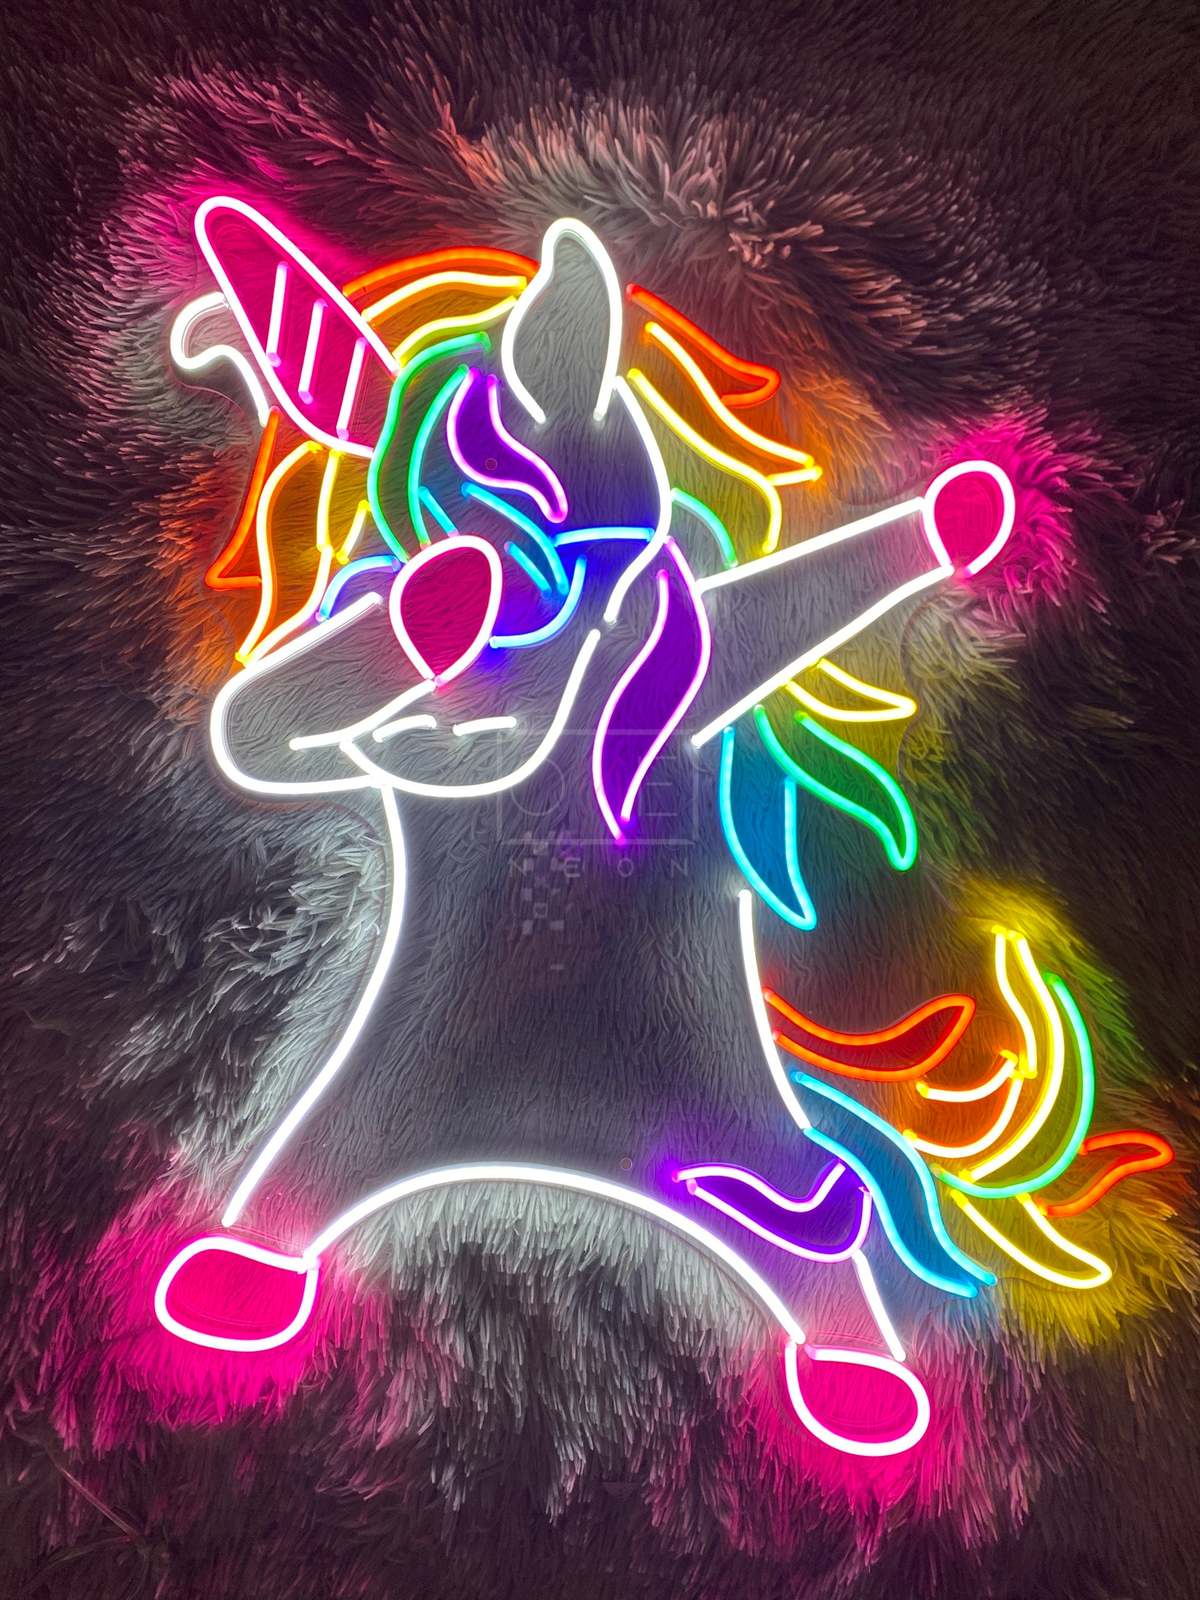 Unicorn  | LED Neon Sign - $40.00 - $490.00